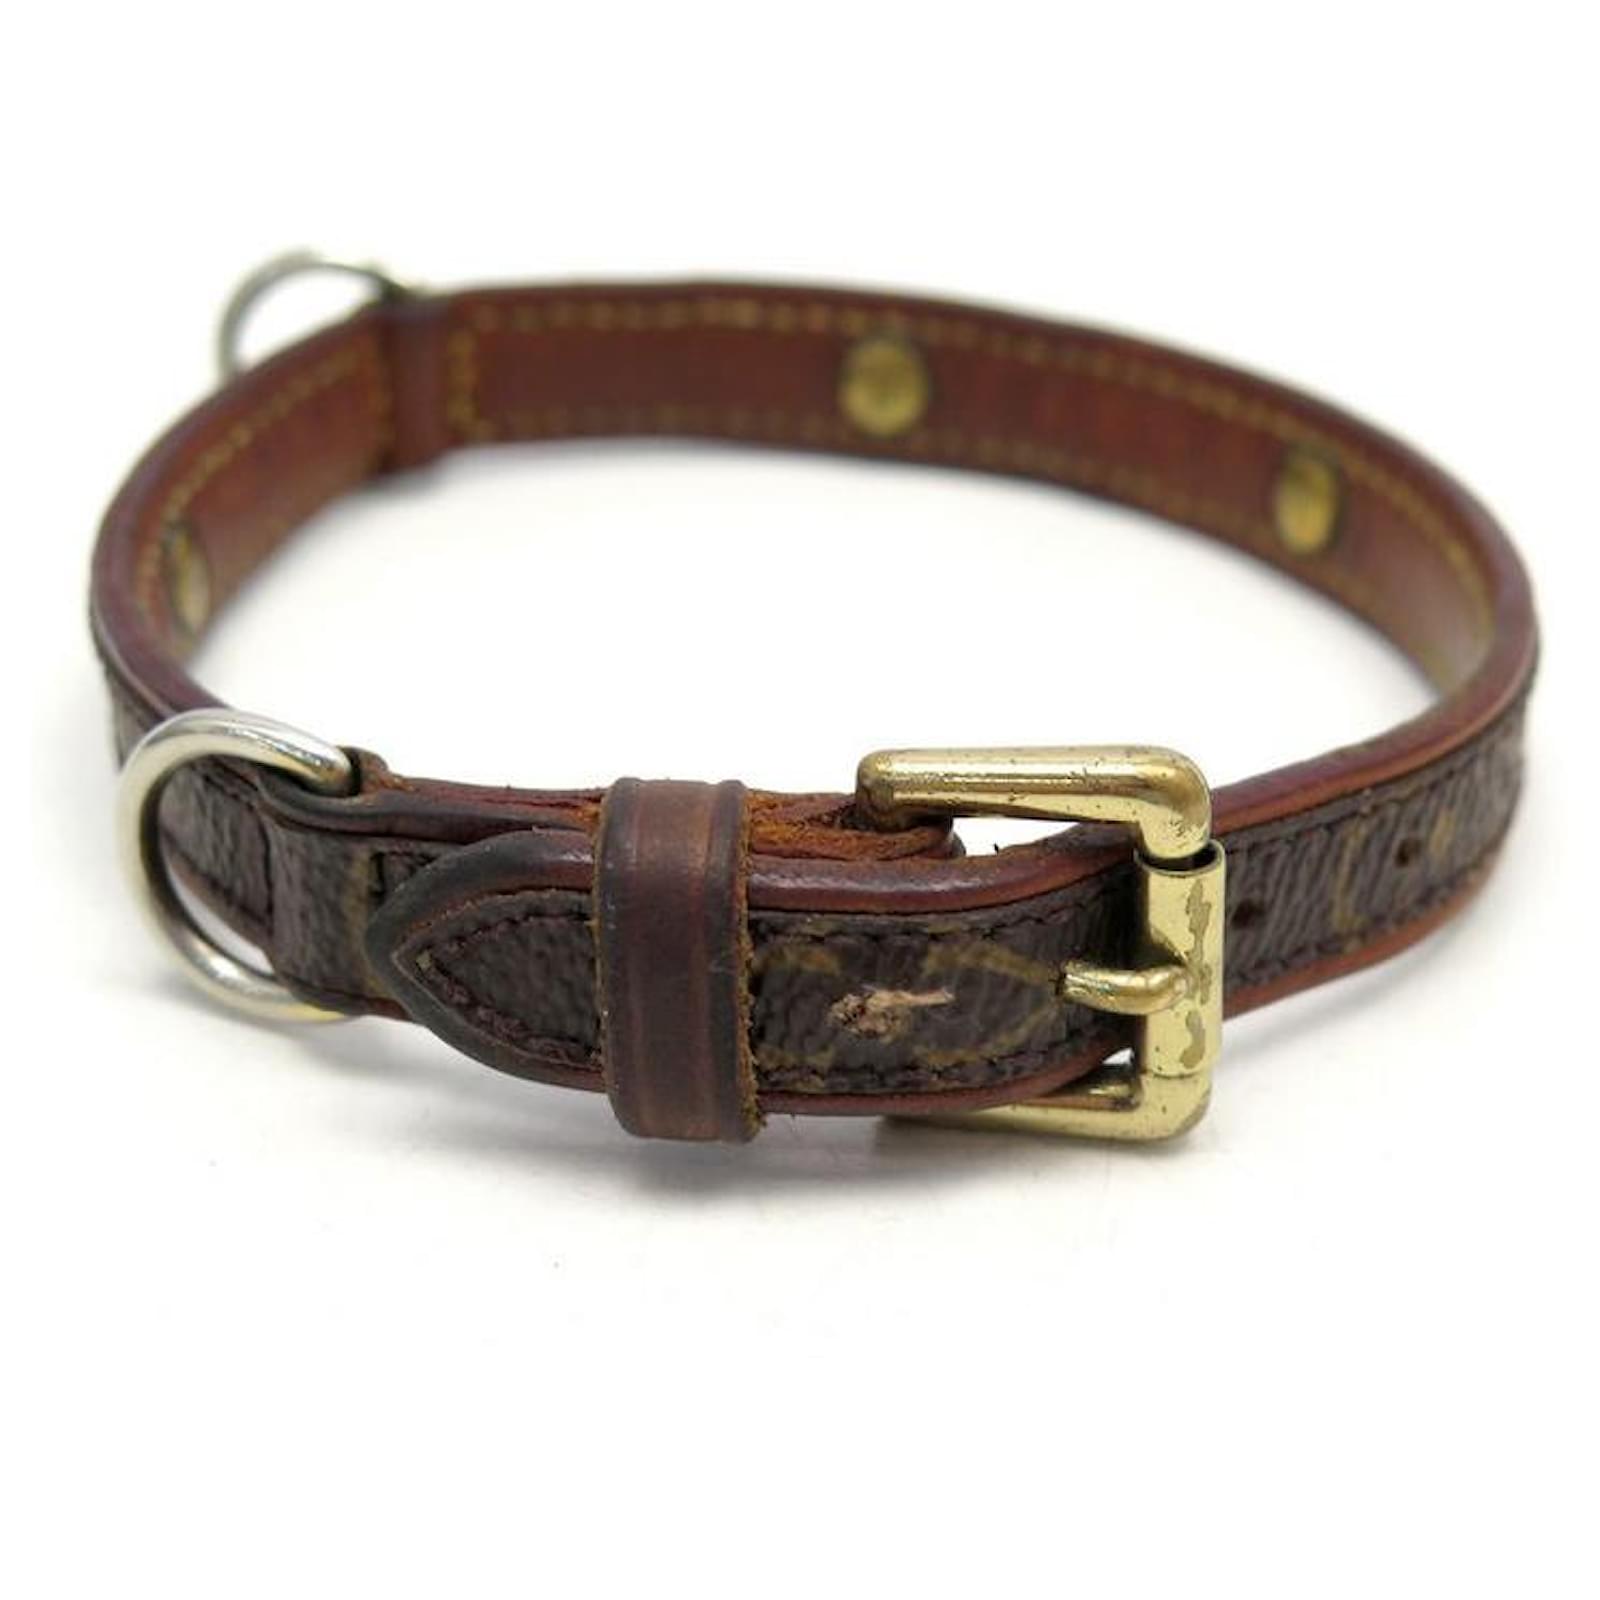 lv dog collar and leash